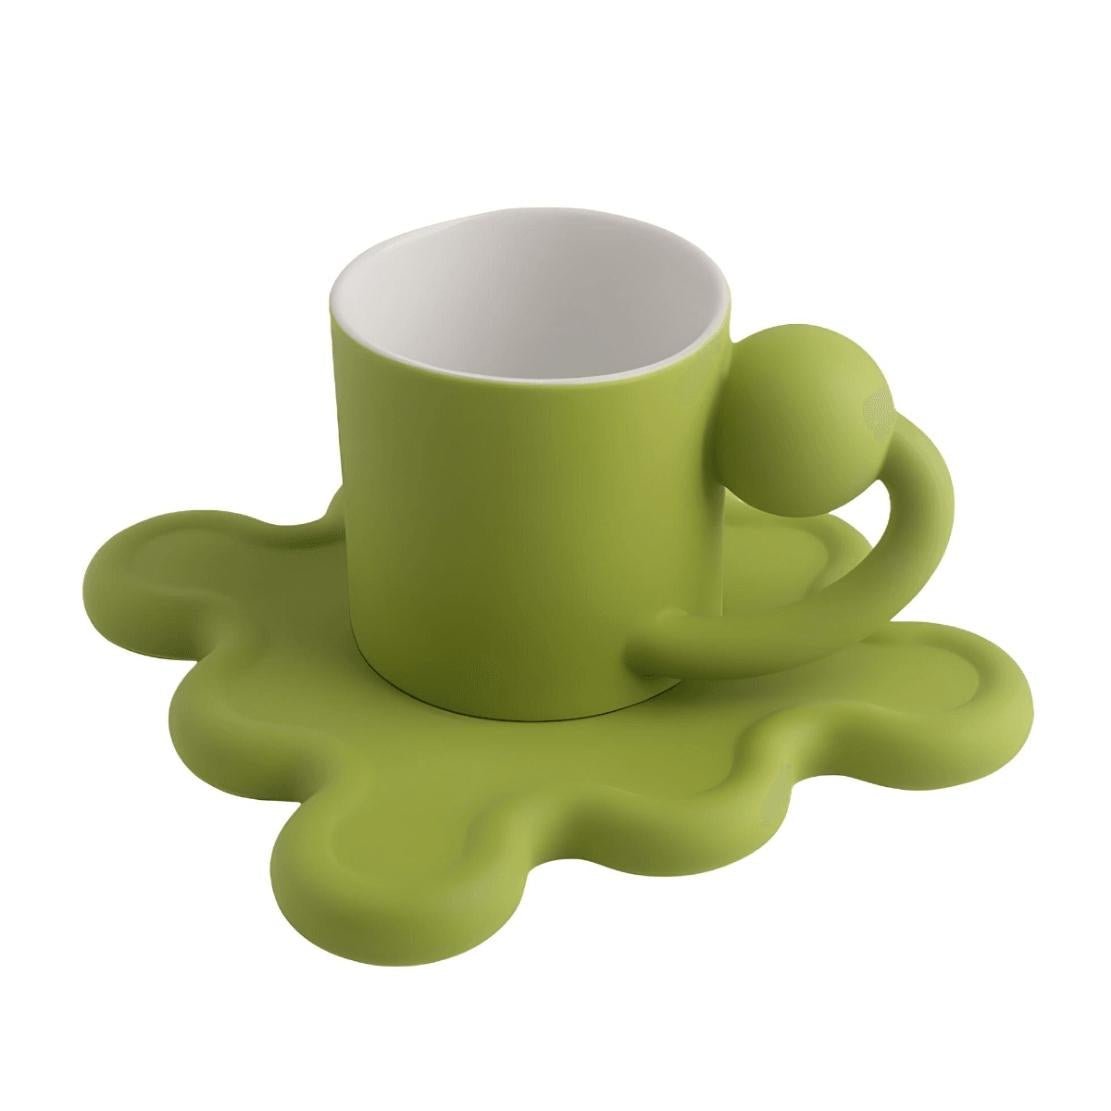 Green ball handle mug with wavy wiggle saucer